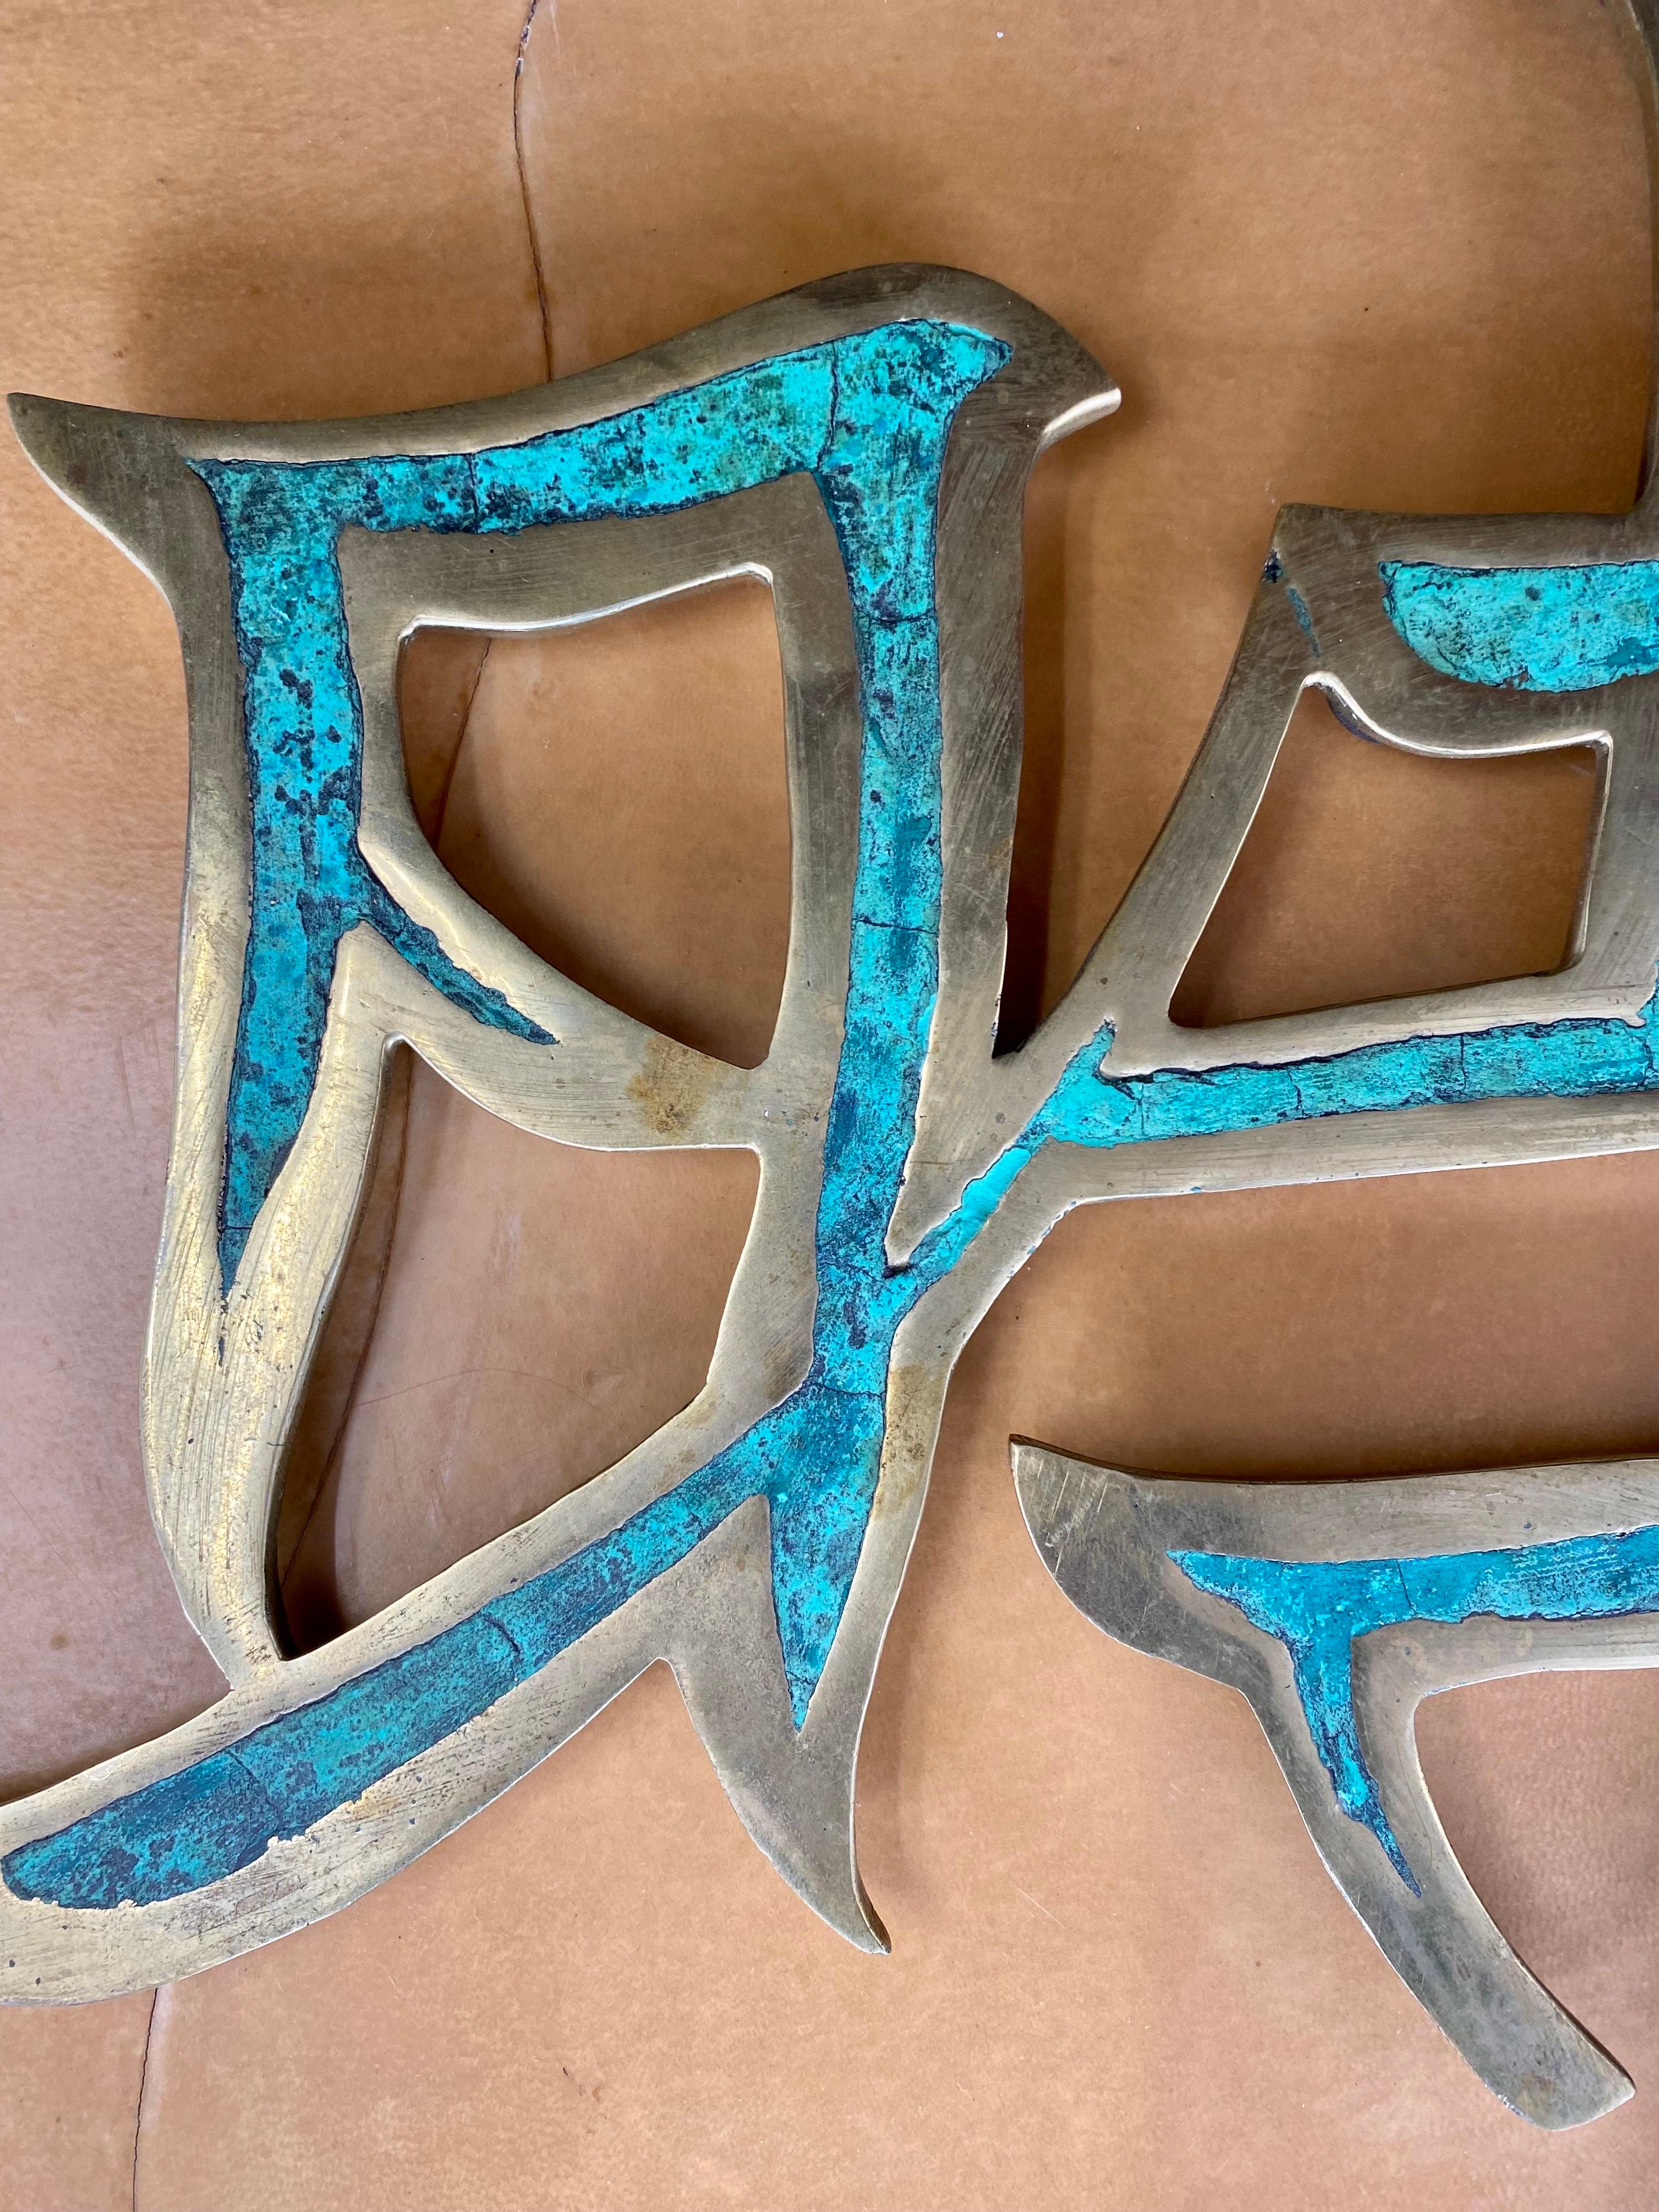 Magnifique suspension murale mexicaine moderniste en laiton présentant des Kanji chinois incrustés de malachite par Pepe Mendoza, avec un anneau en laiton au dos pour la suspendre, Mexique, vers les années 1960. 

Dimensions : 14